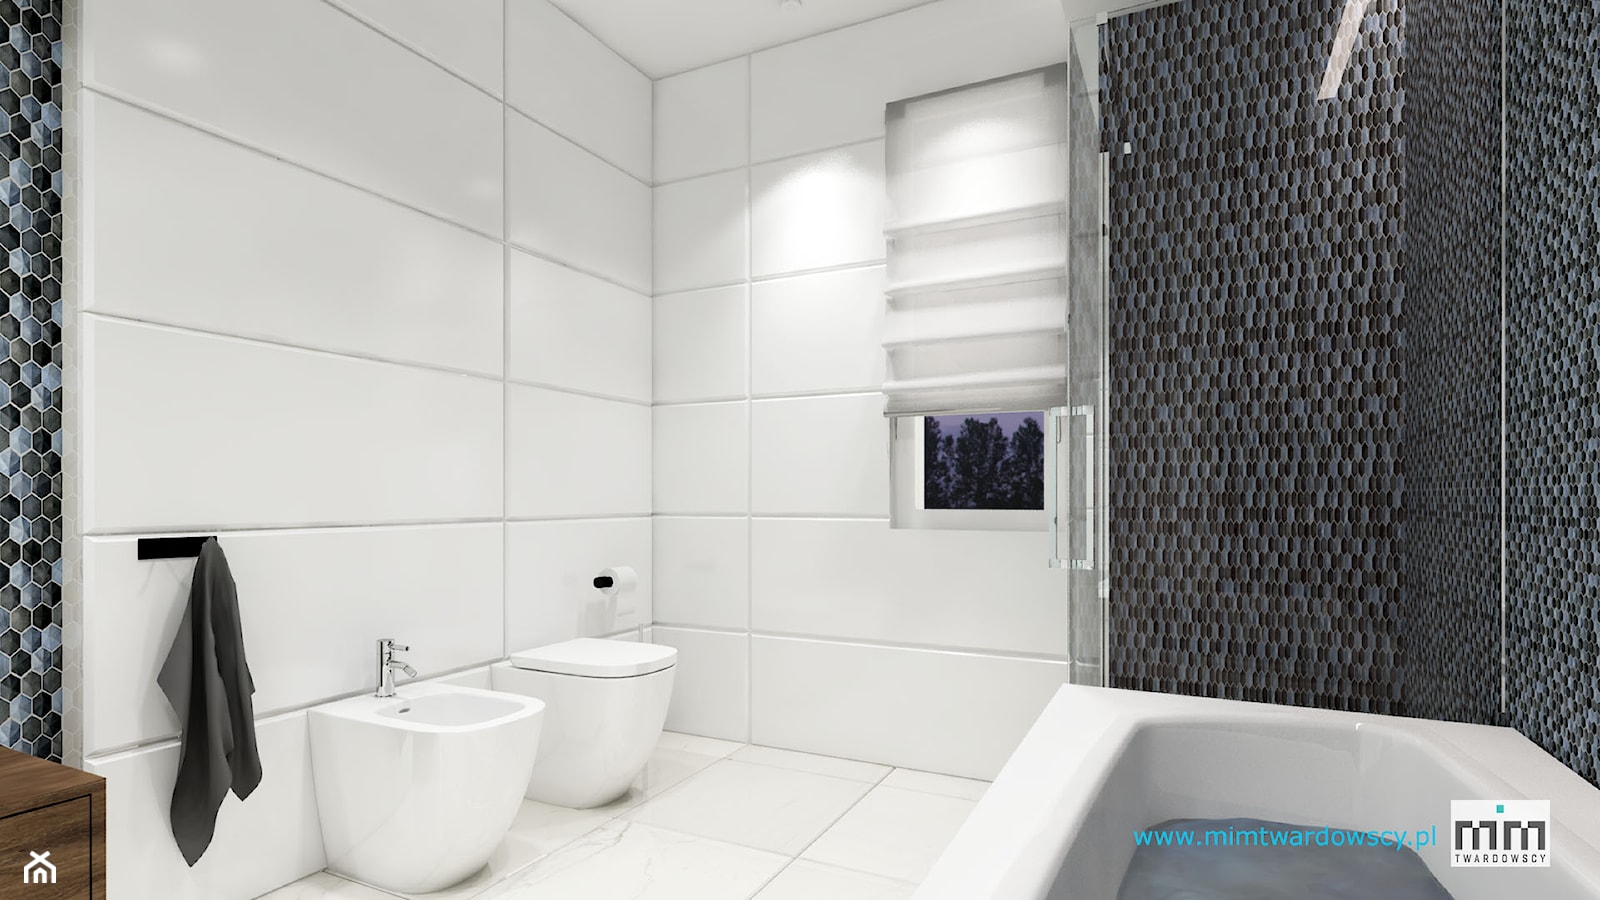 KROP łazienka z piękna mozaiką :) - Średnia z punktowym oświetleniem łazienka z oknem, styl nowoczesny - zdjęcie od mimtwardowscy - Homebook